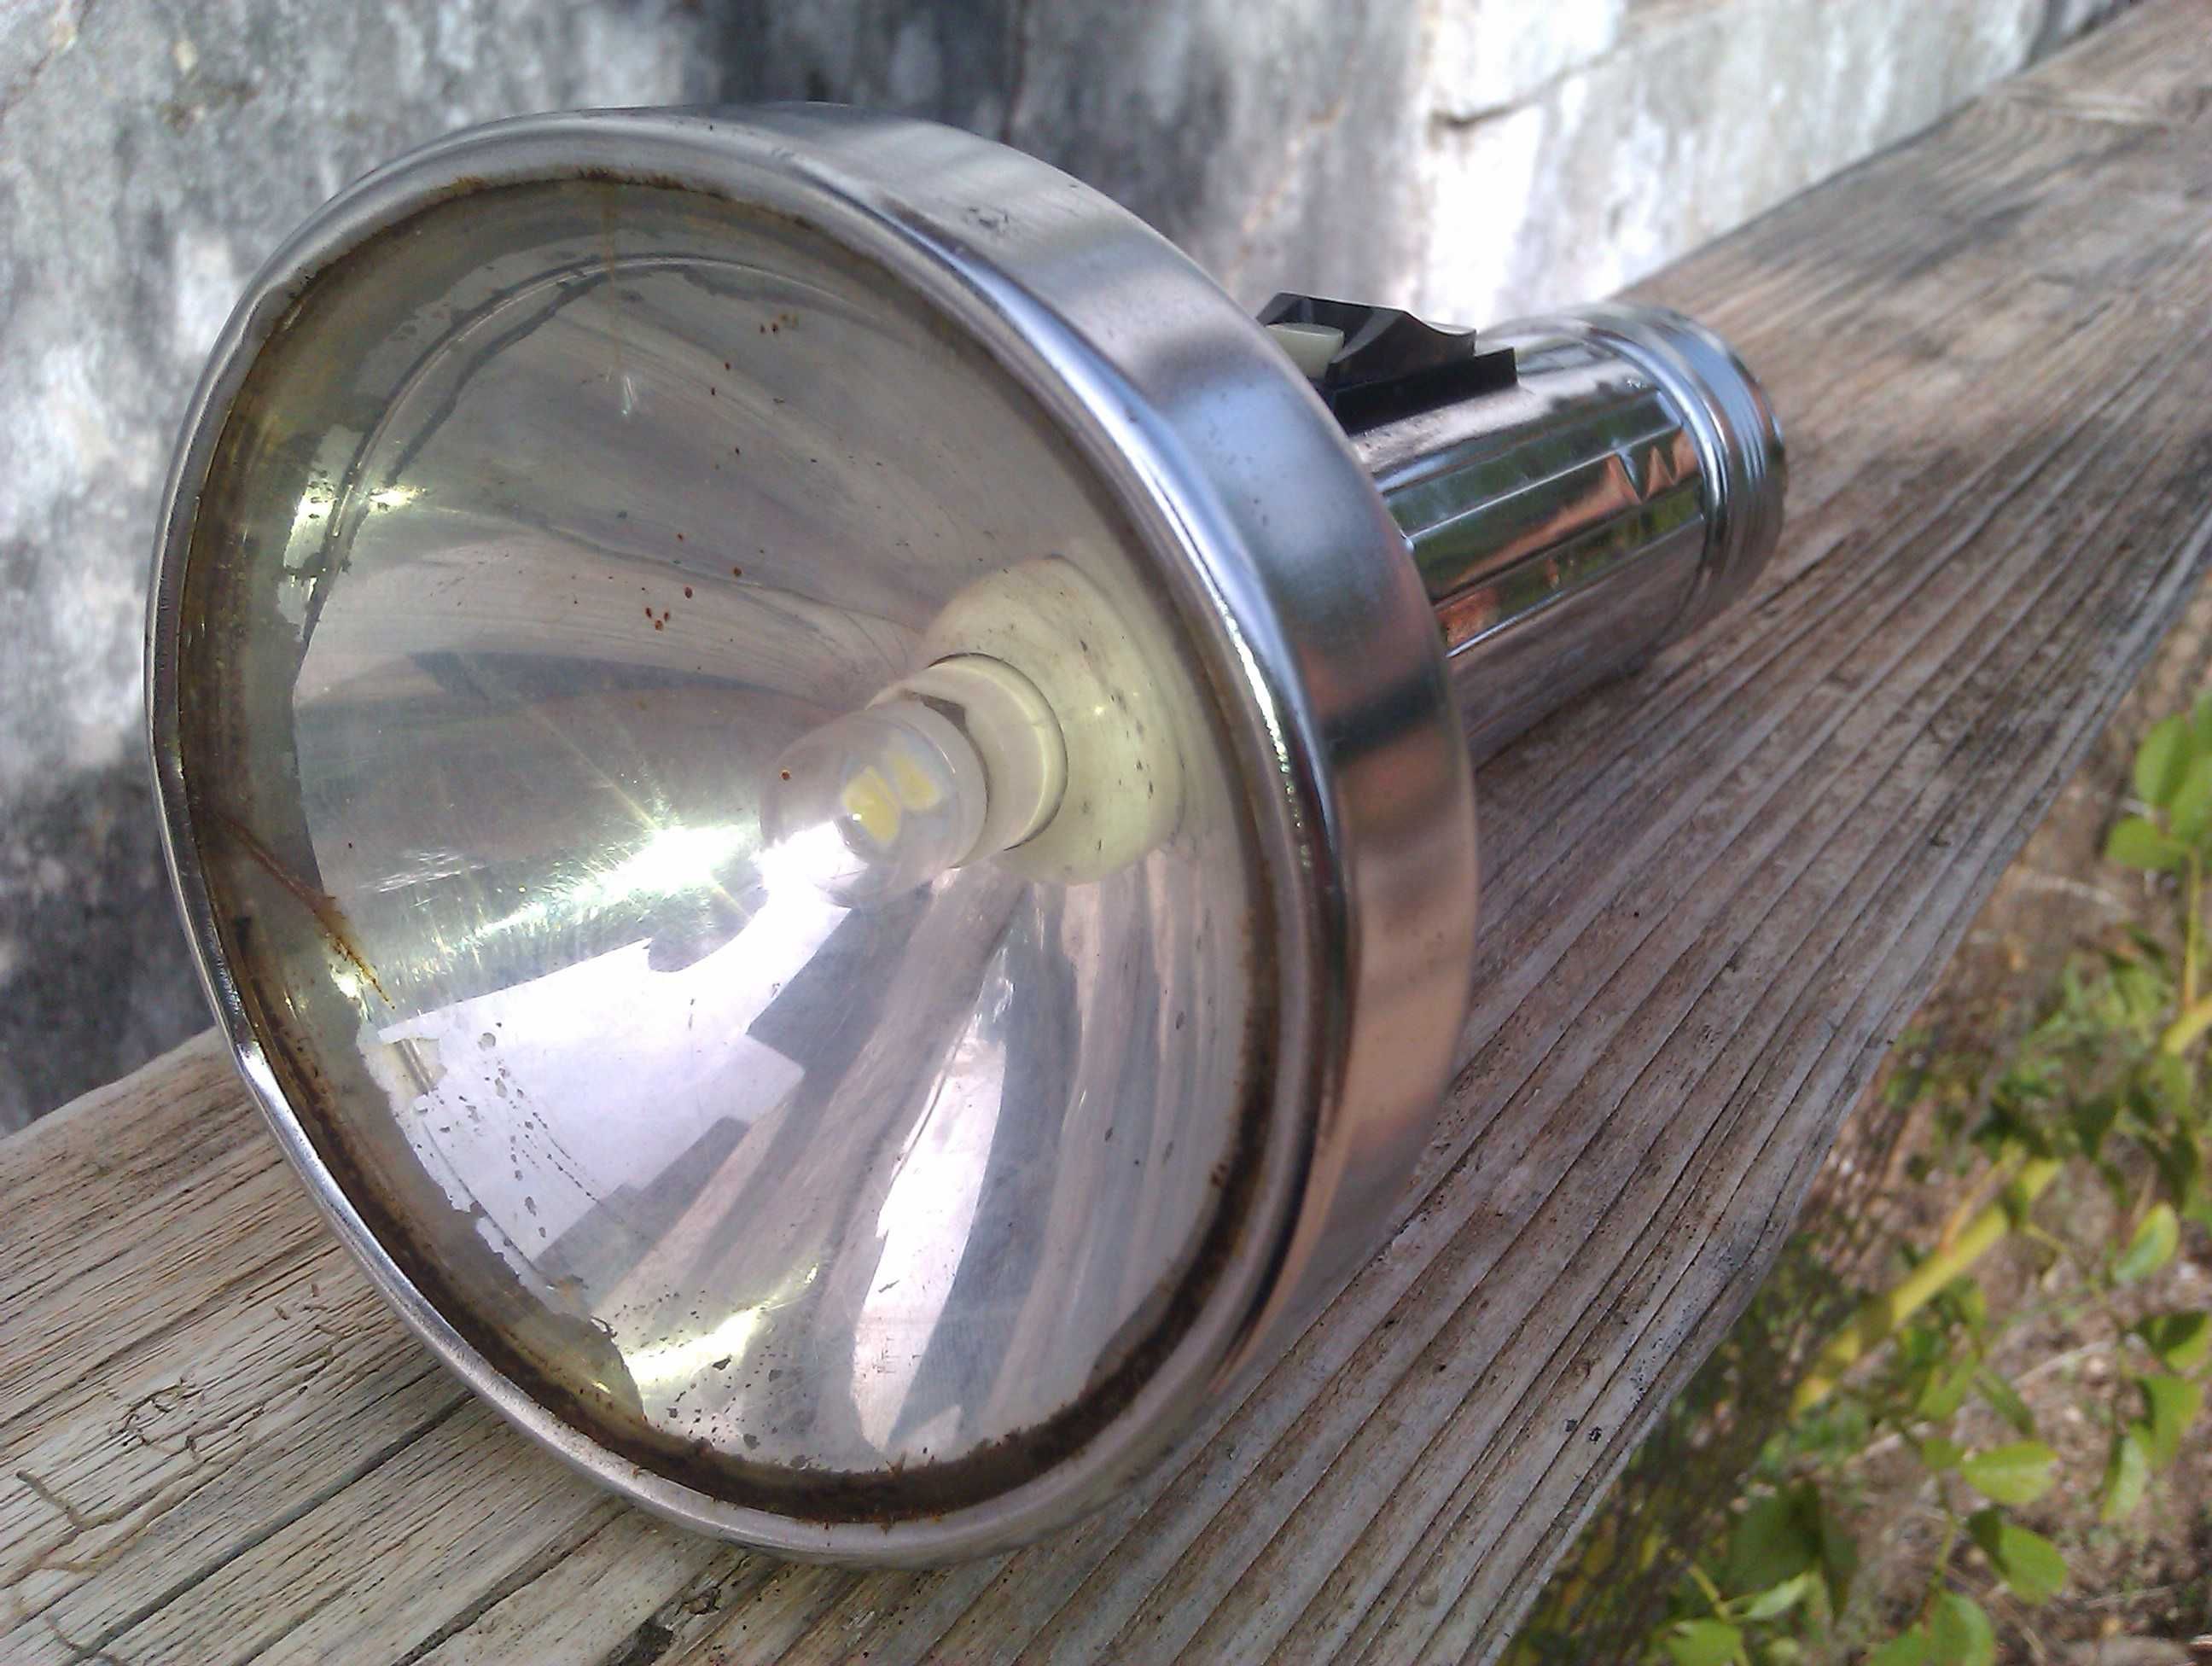 Lanterna rara modelo de coleção "Wonder" c/ lâmpada LED